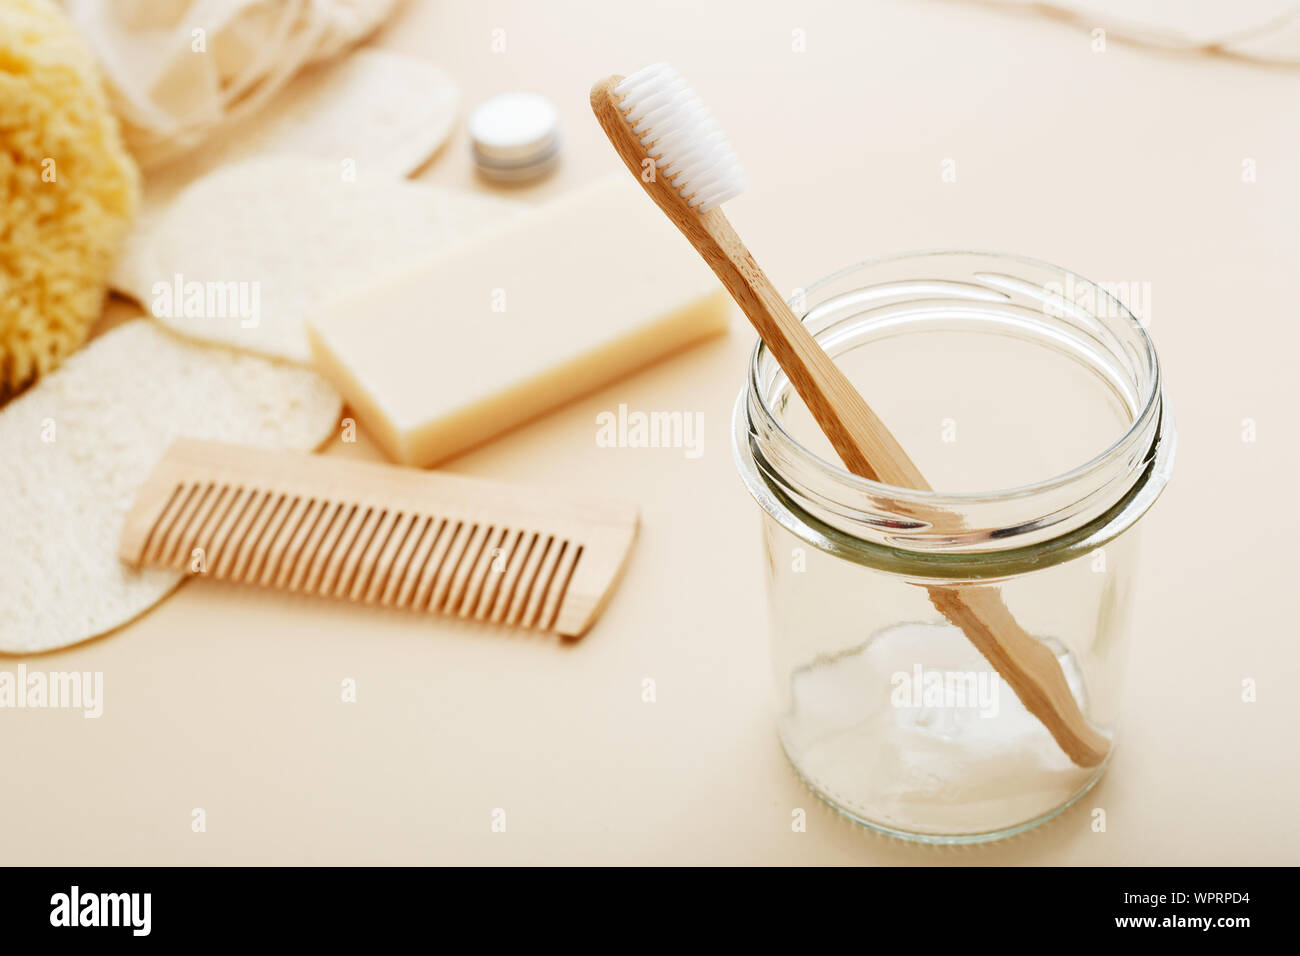 Cero residuos de plástico y de concepto libre de bambú con cepillo de dientes, toalla, esponja marina, esponja, jabón, cepillo para el pelo de madera. Eco-amigable el baño. Natural Foto de stock